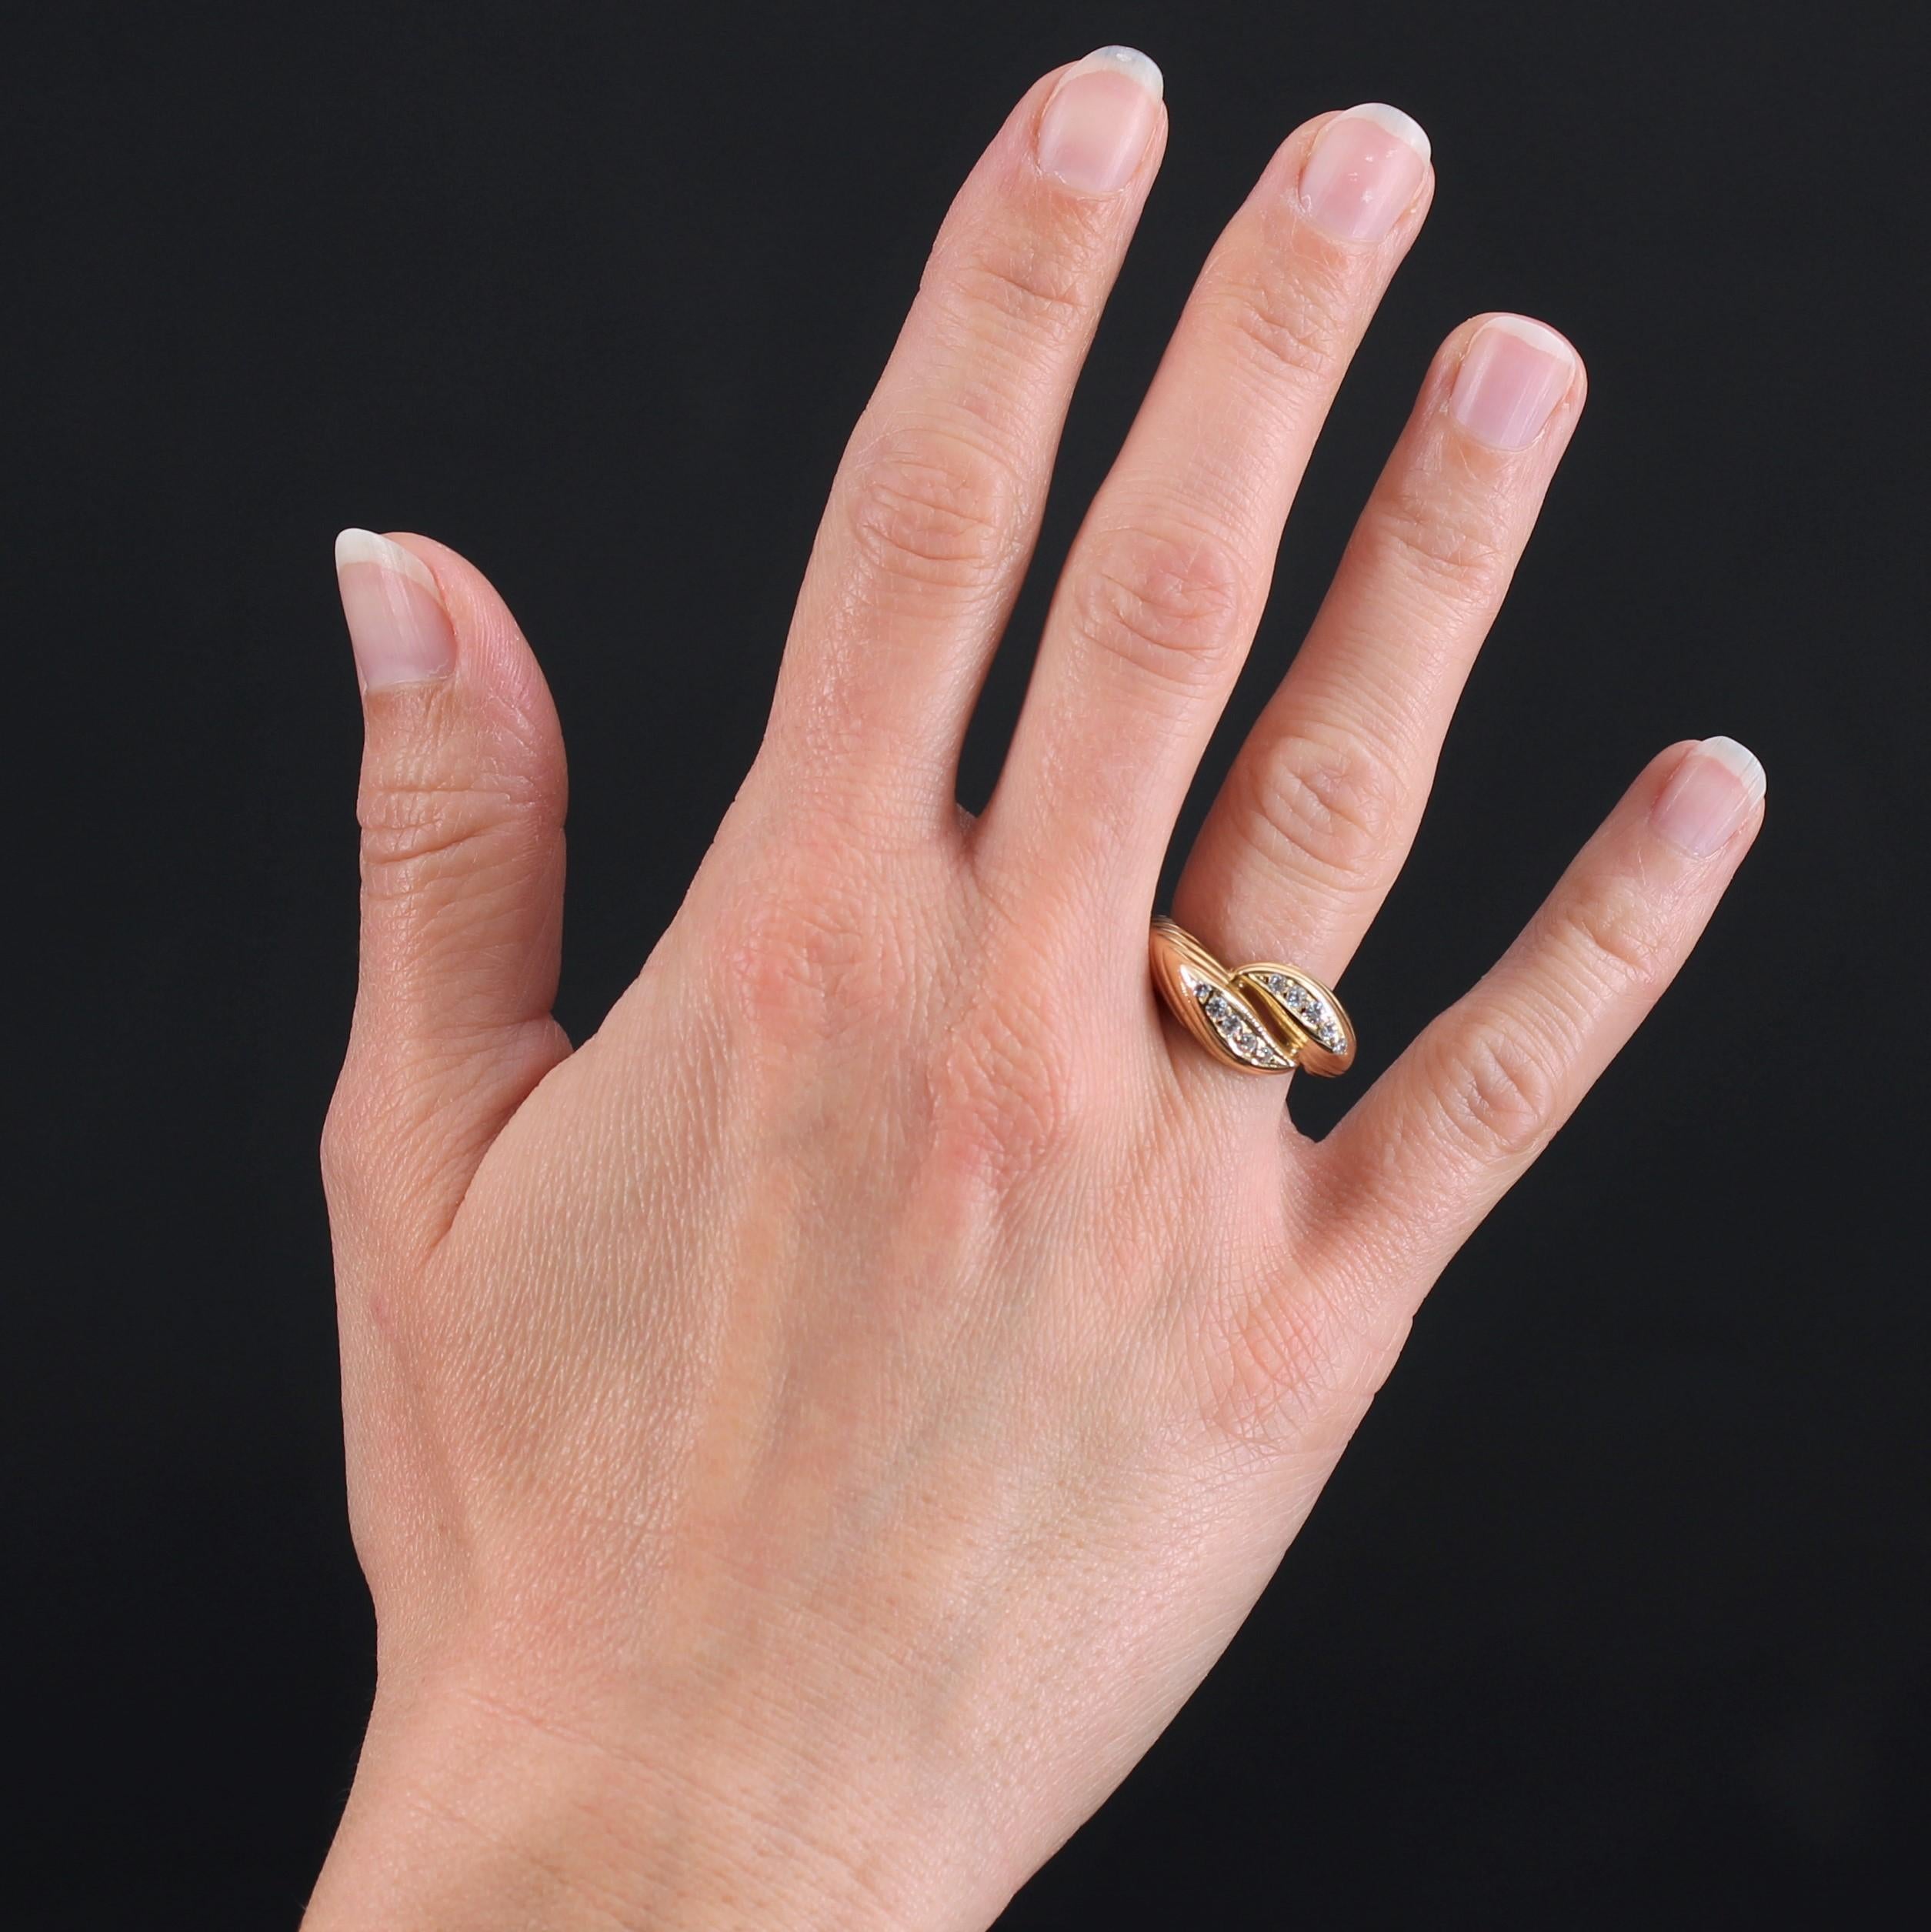 Ring aus 18 Karat Gelbgold.
Ring aus zweiter Hand aus Gelbgold. Er besteht aus 2 Ringen, die oben miteinander verbunden sind und jeweils mit 5 modernen Diamanten mit Brillantschliff auf Wellenmustern verziert sind. Der Ring ist auf der Hälfte seines